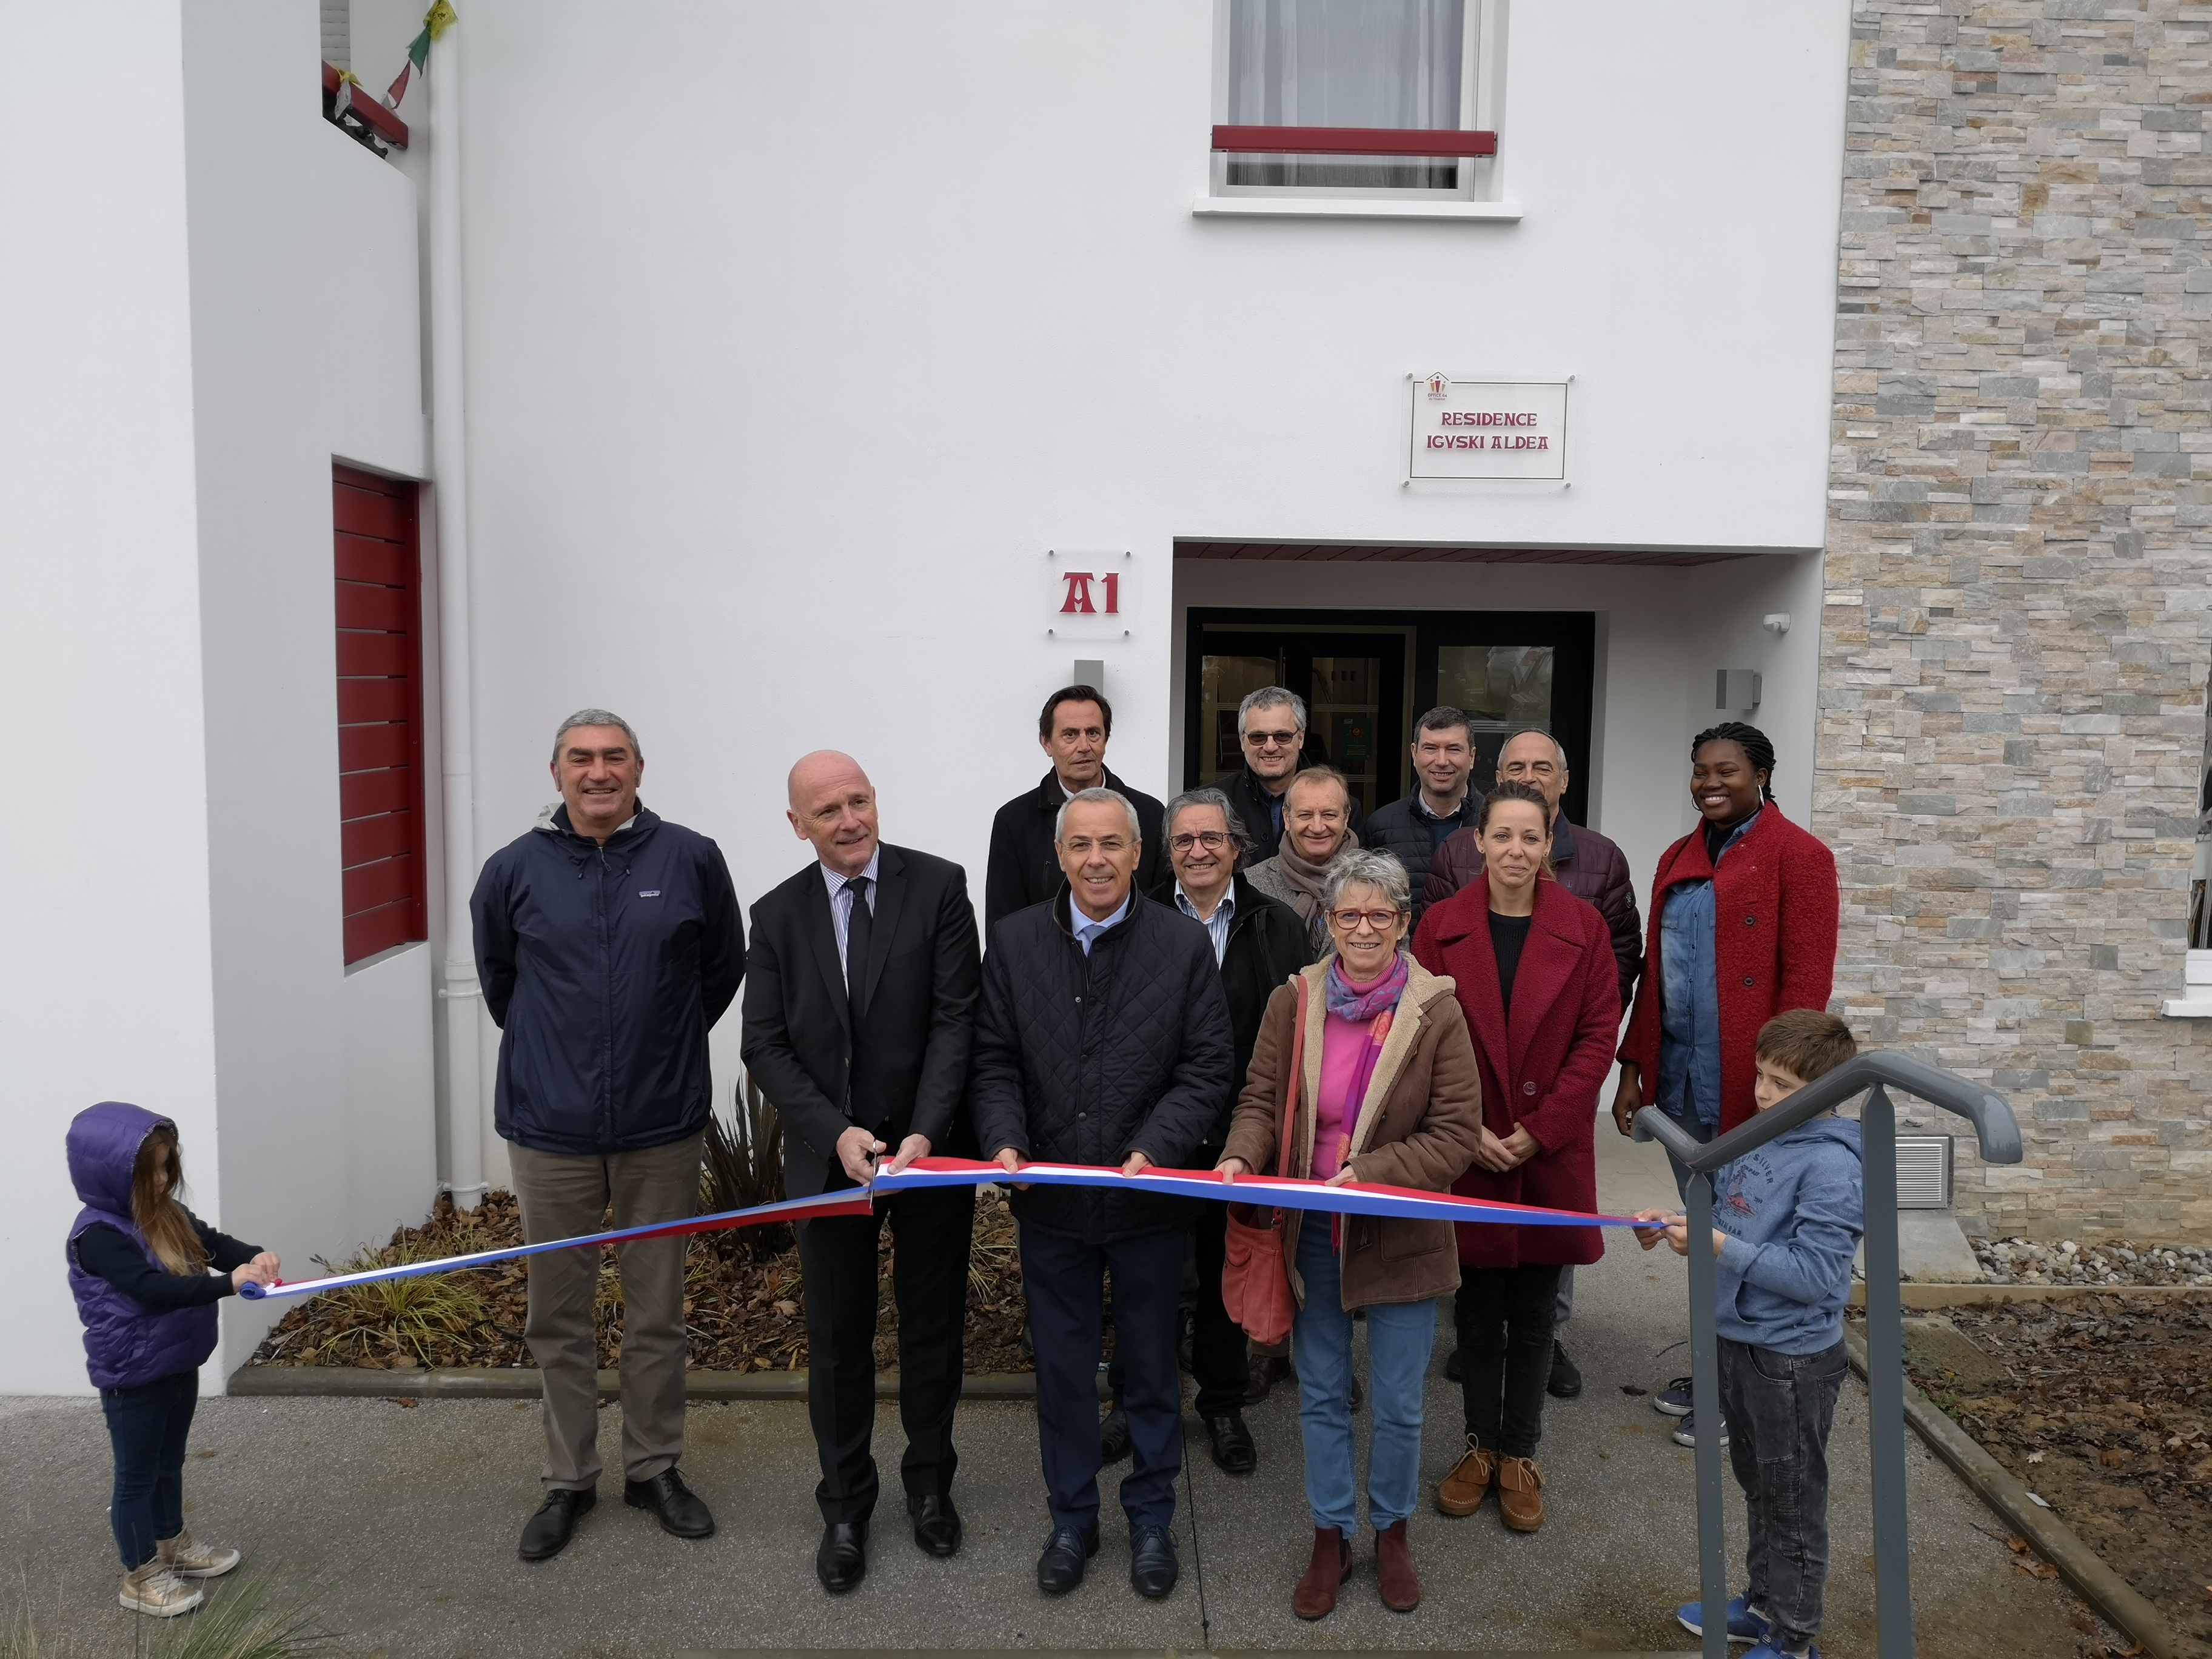 Bidart : Inauguration de la résidence Iguski Aldea